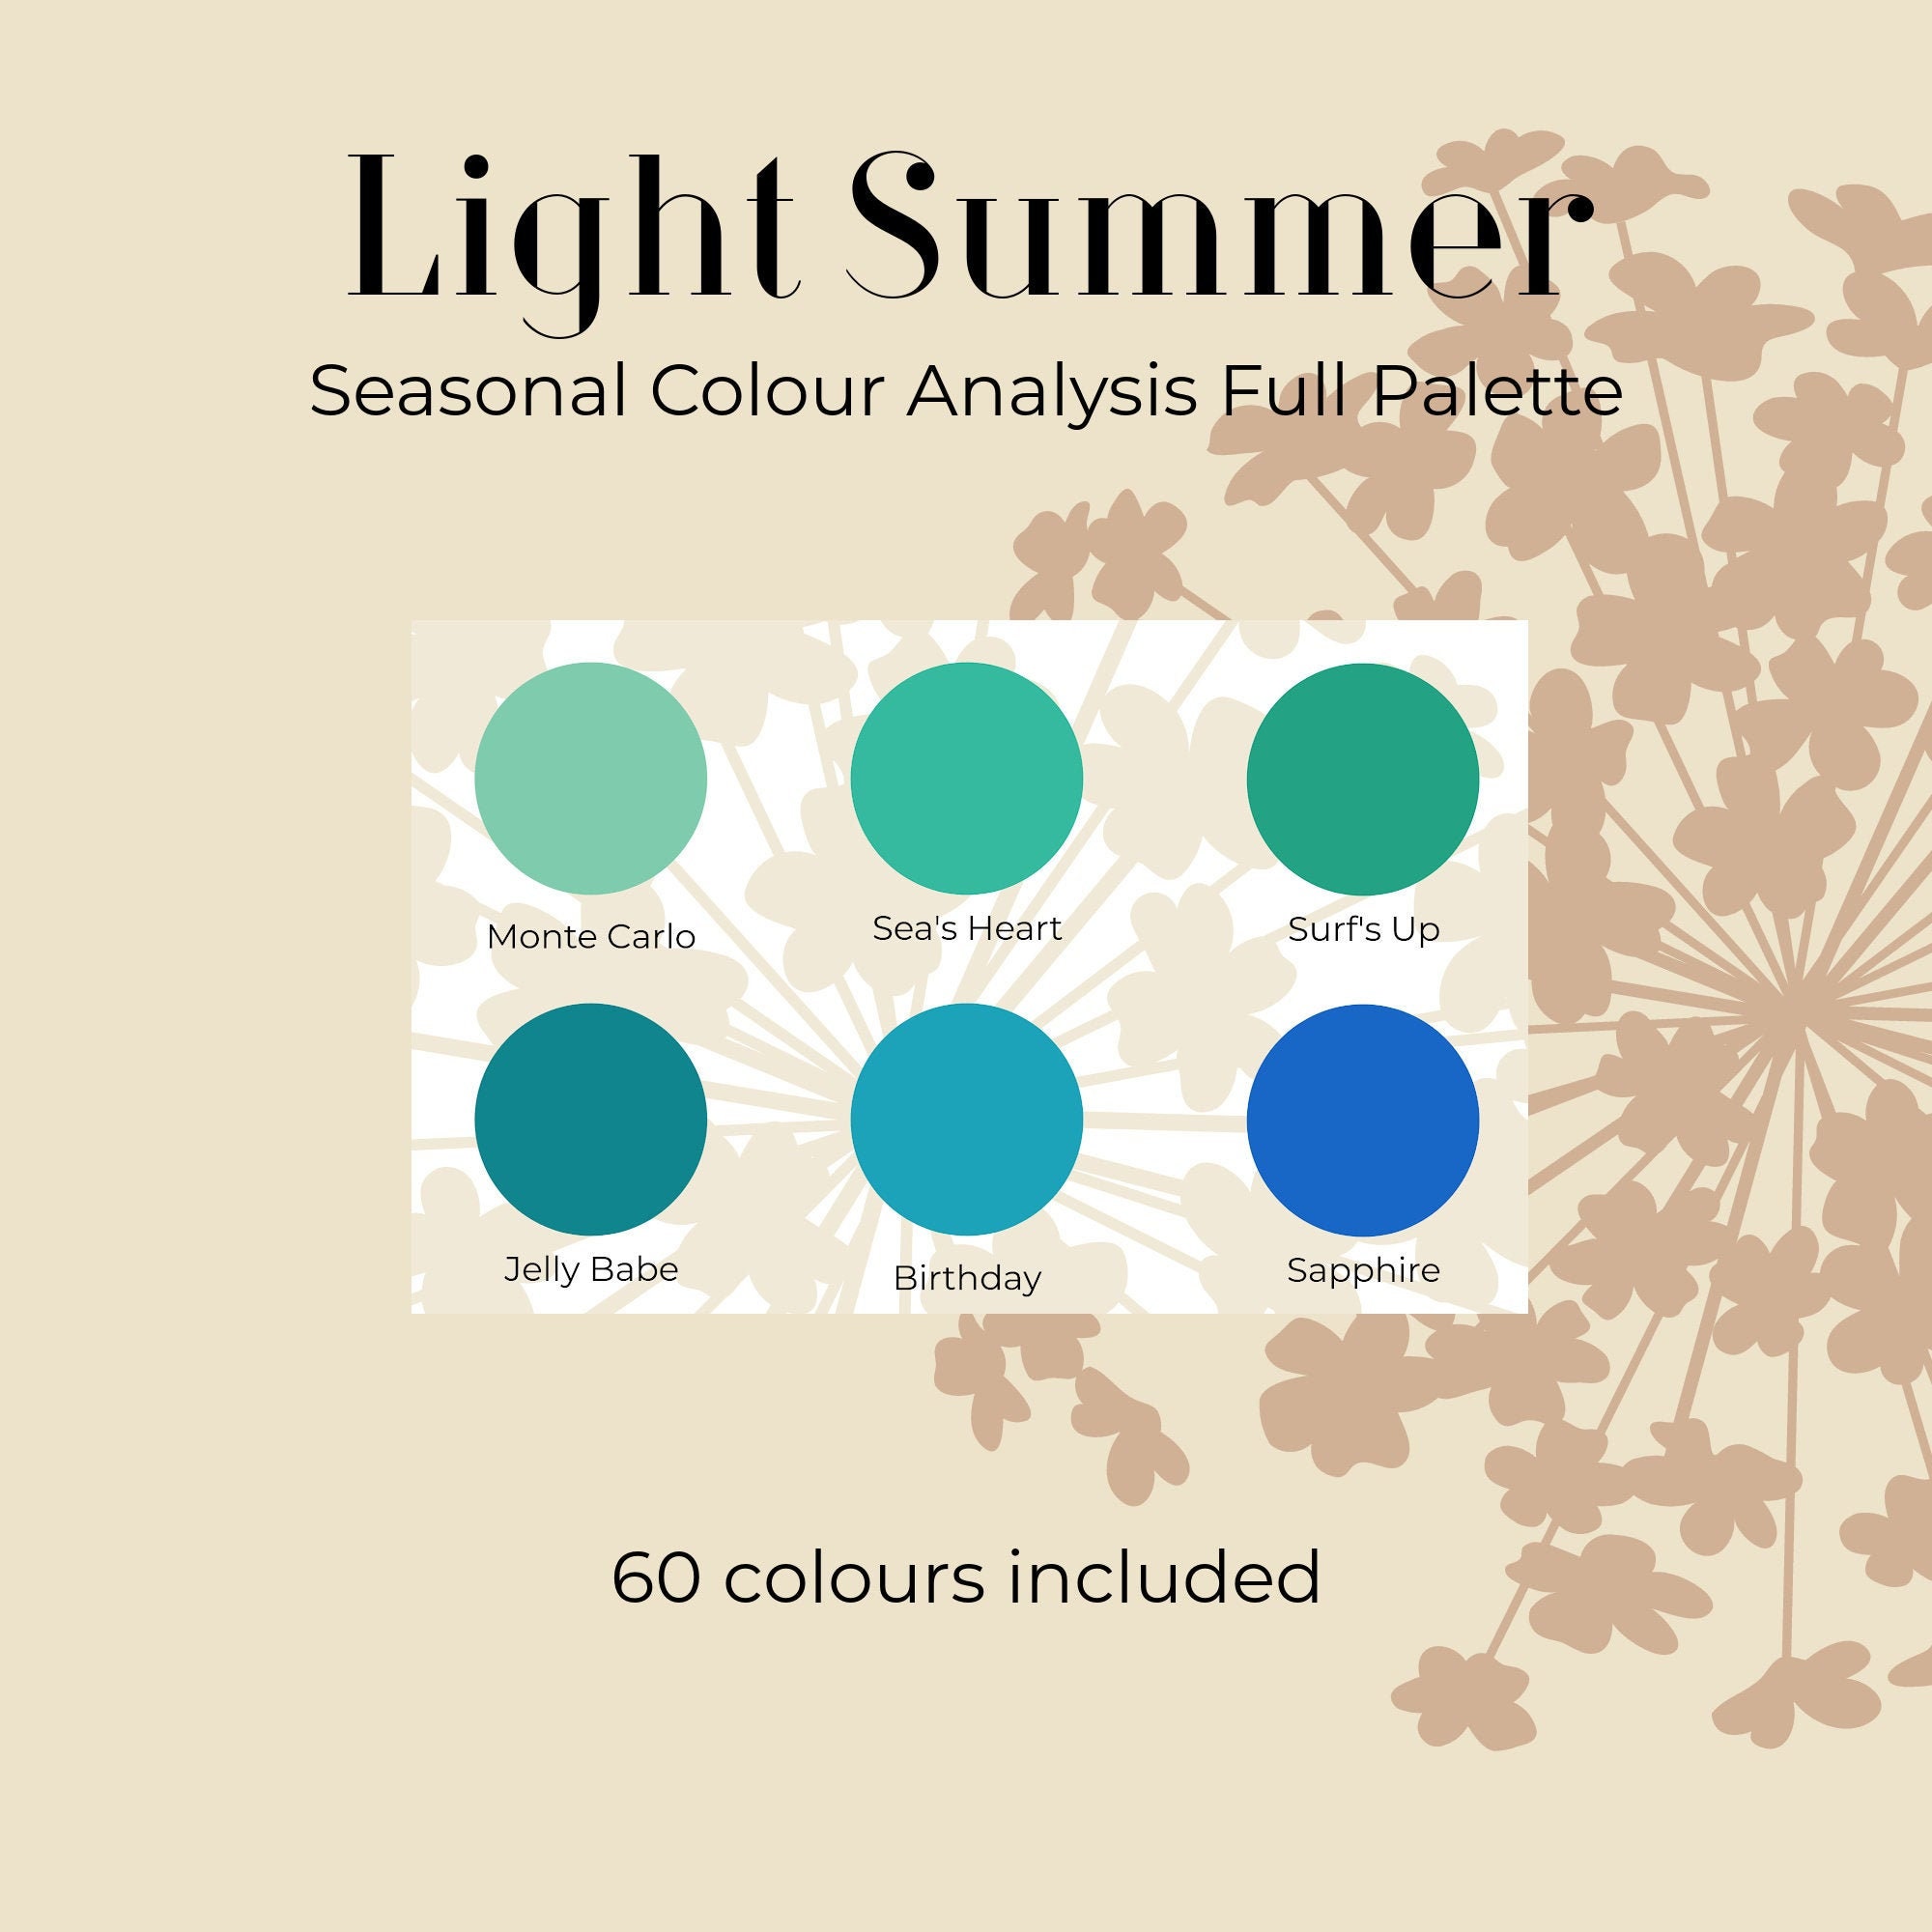 Light Personal Seasonal Colour Analysis Full Palette Etsy